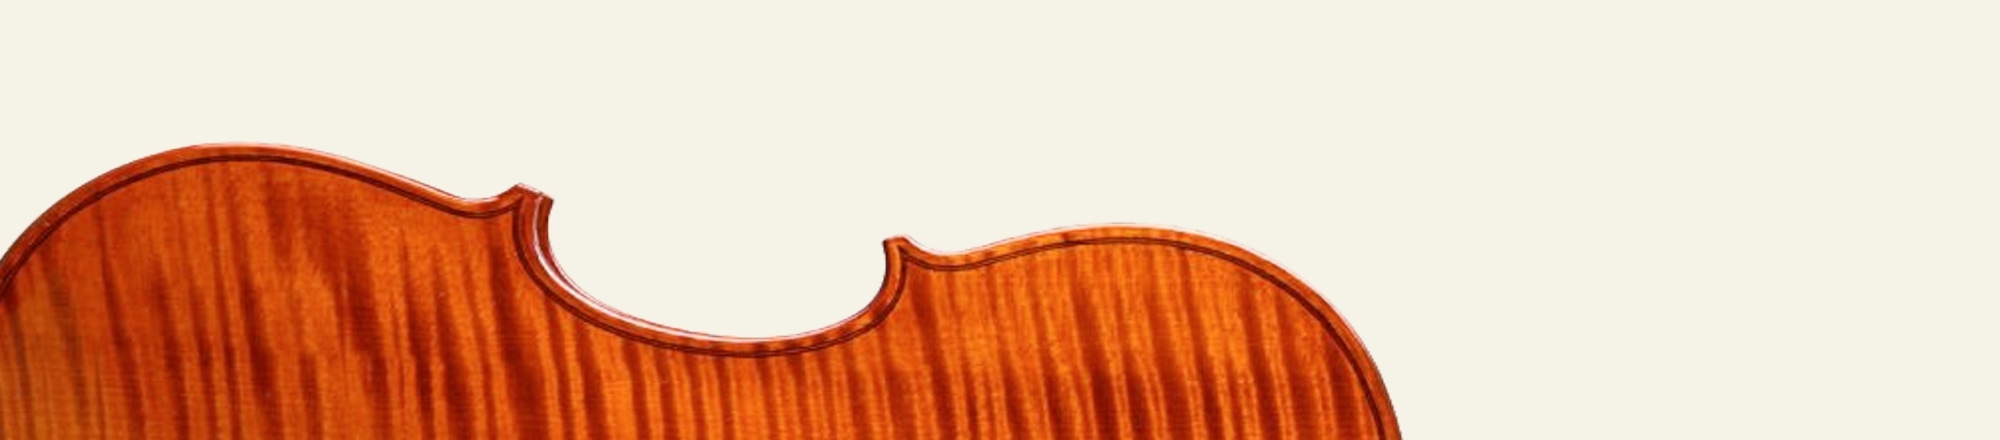 Geigen (verkauft)